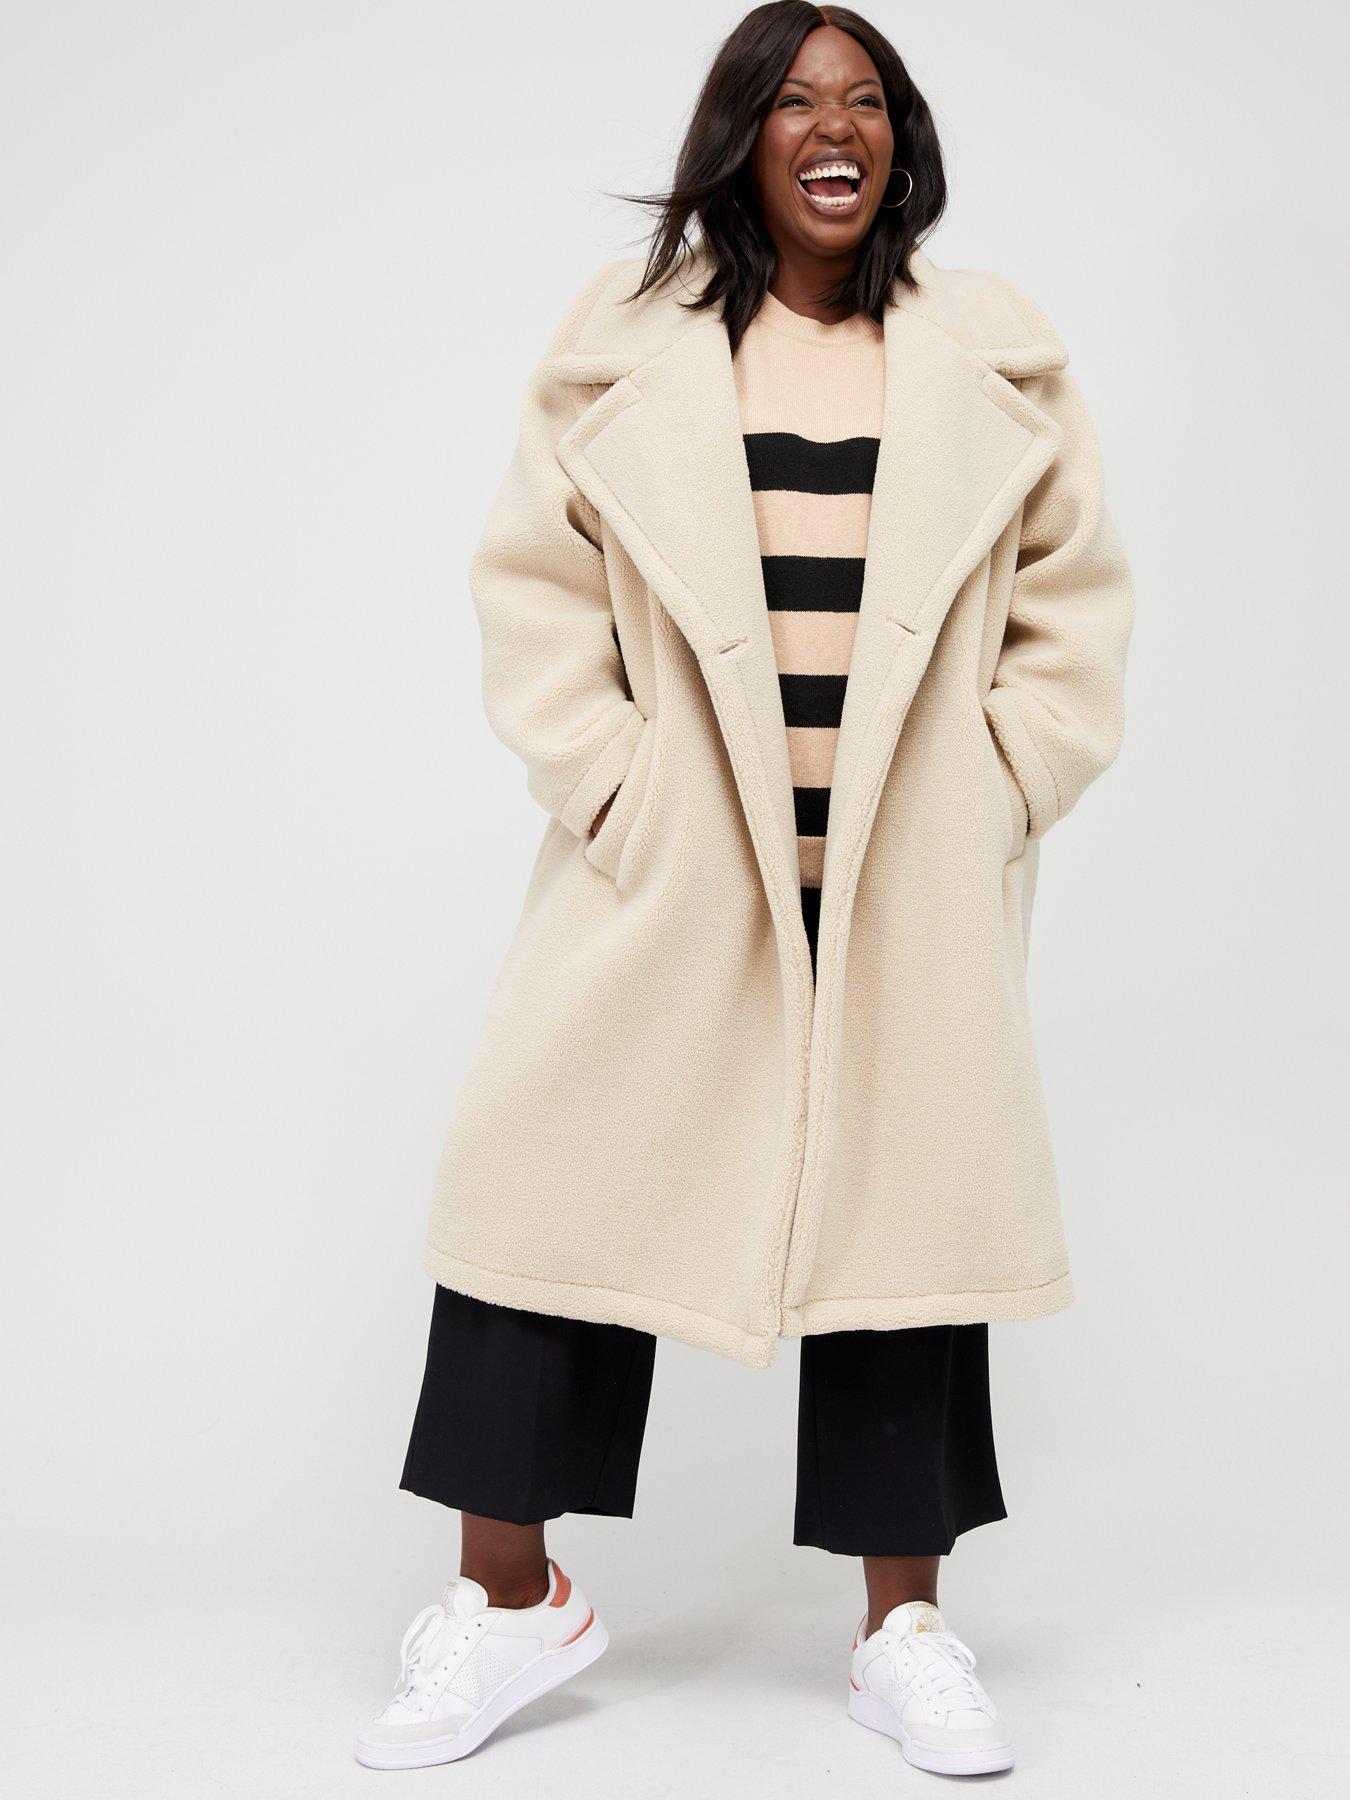 Plus Size Women Slim Hooded Jacket Overcoat Coat Lapel Removable Zipper Outwear Tops 